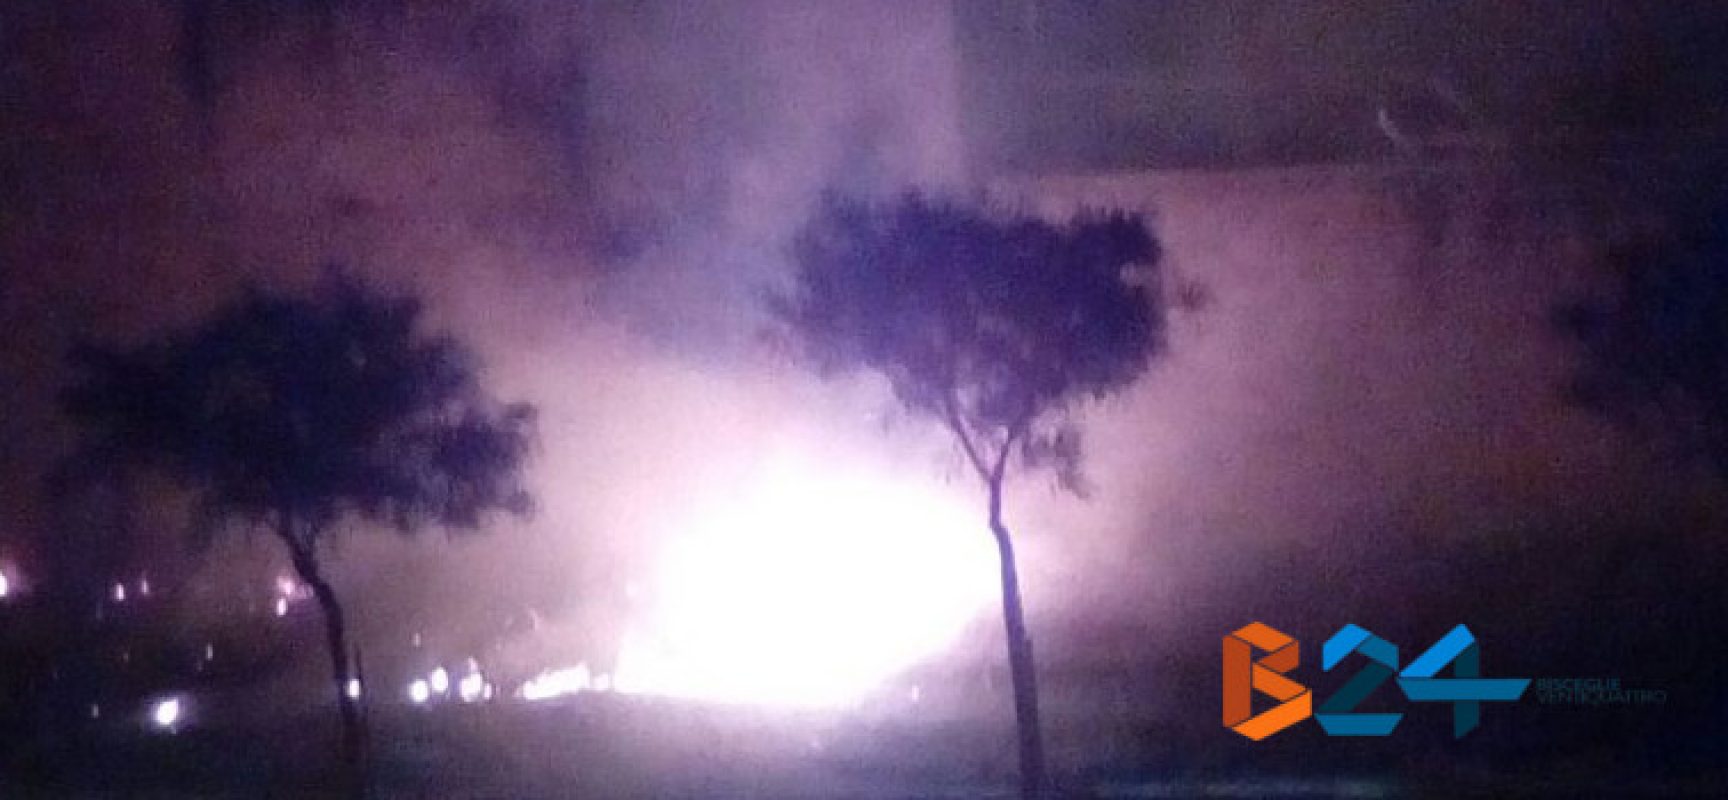 Incendio durante la notte in via Alceo Dossena nella zona 167